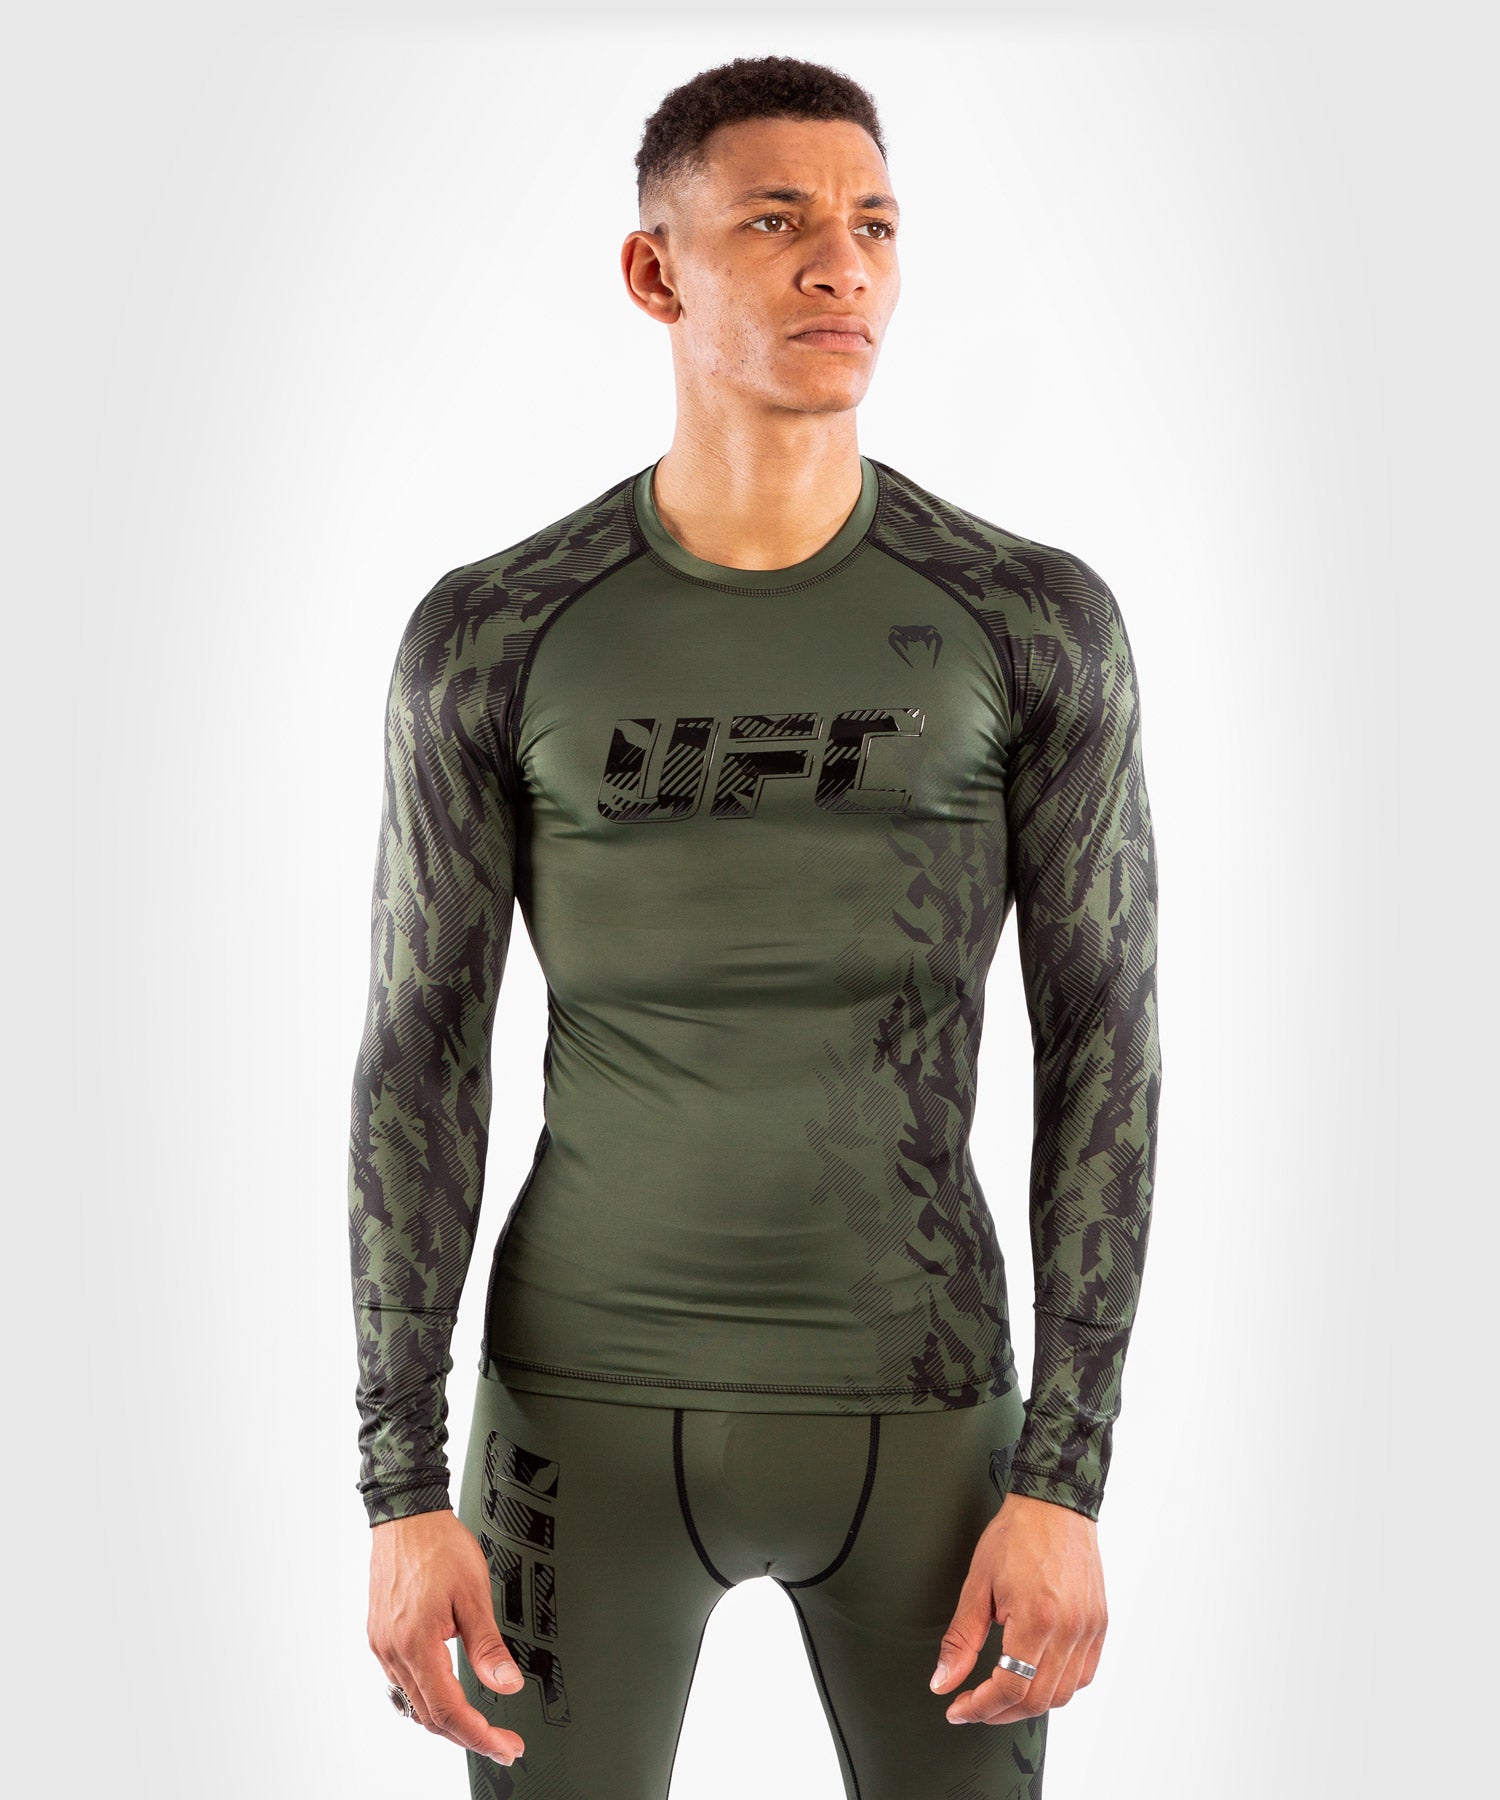 T-shirt de Compression Manches Longues Homme UFC Venum Authentic Fight –  Venum France